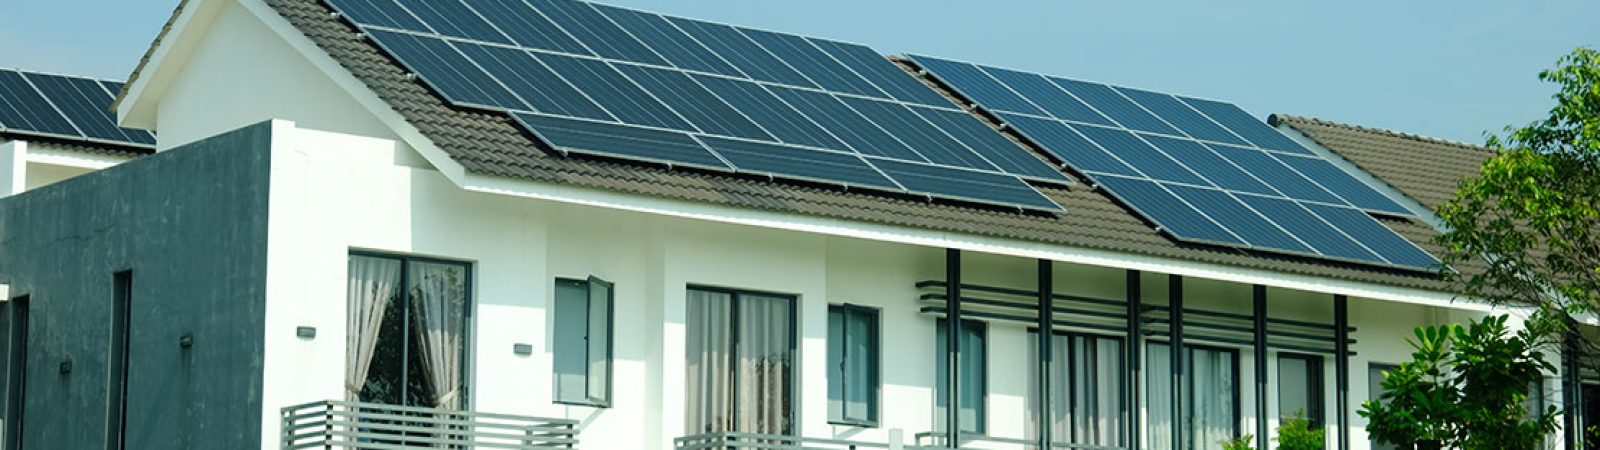 Vivienda con instalacion de placas solares de iberdrola